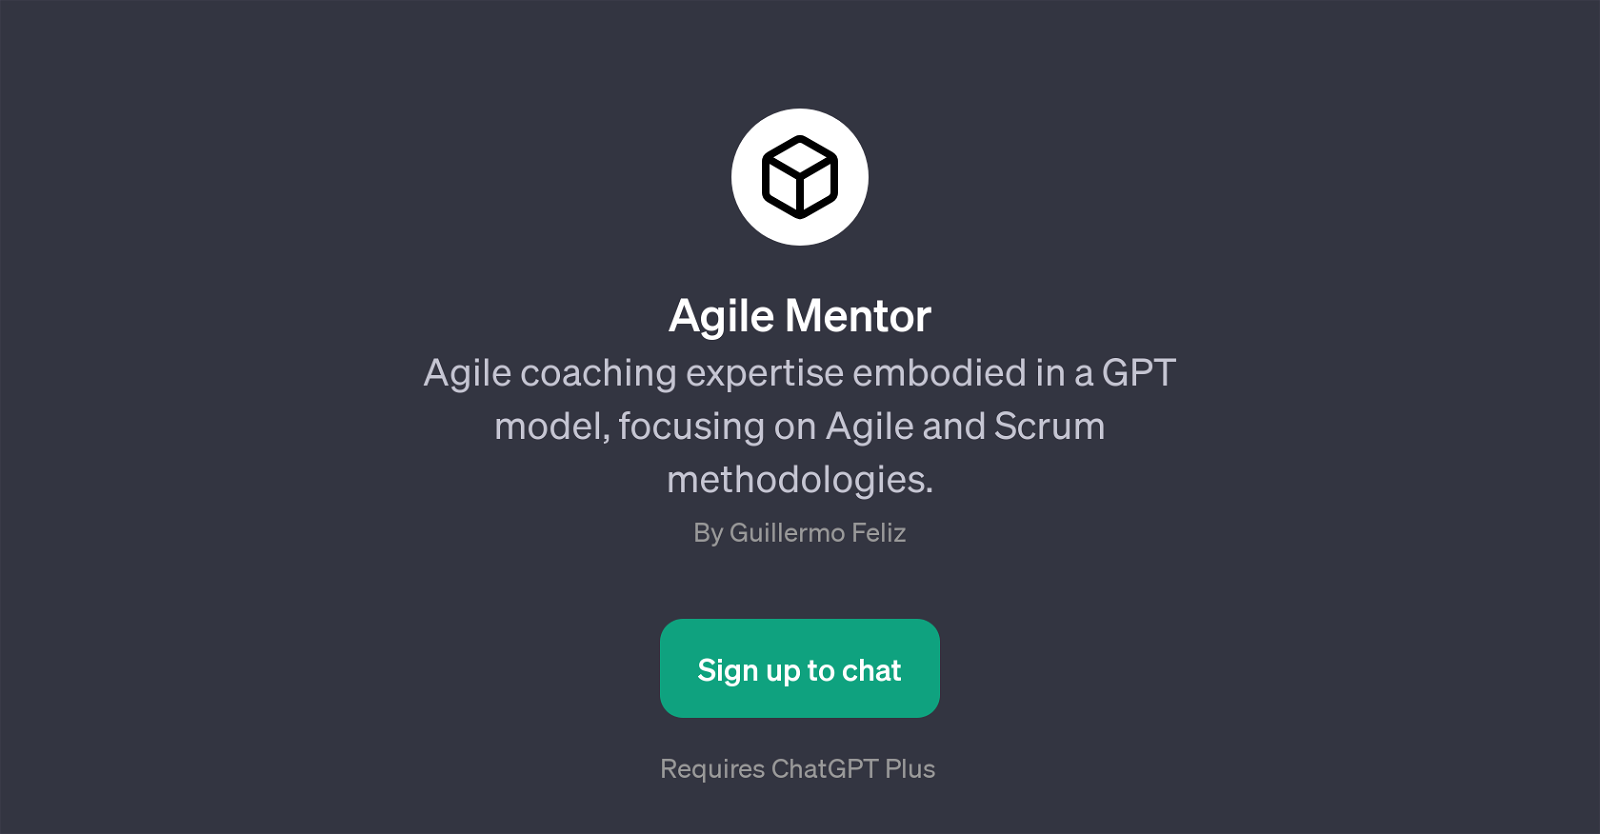 Agile Mentor website